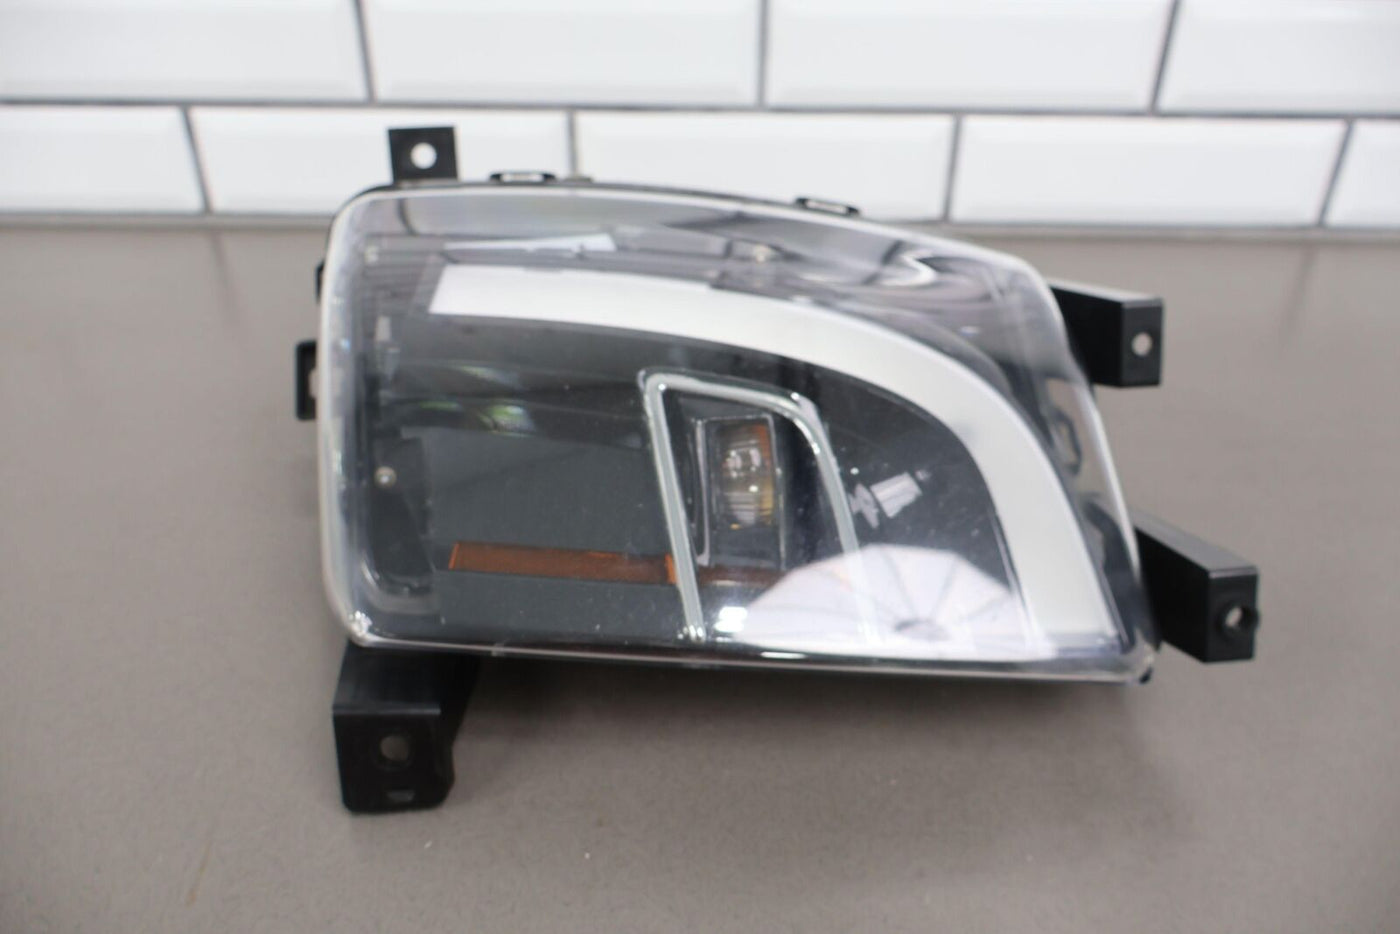 16-20 Tesla Model X Front Left LH OEM LED Fog Light Lamp (Tested) 1034326-00-A